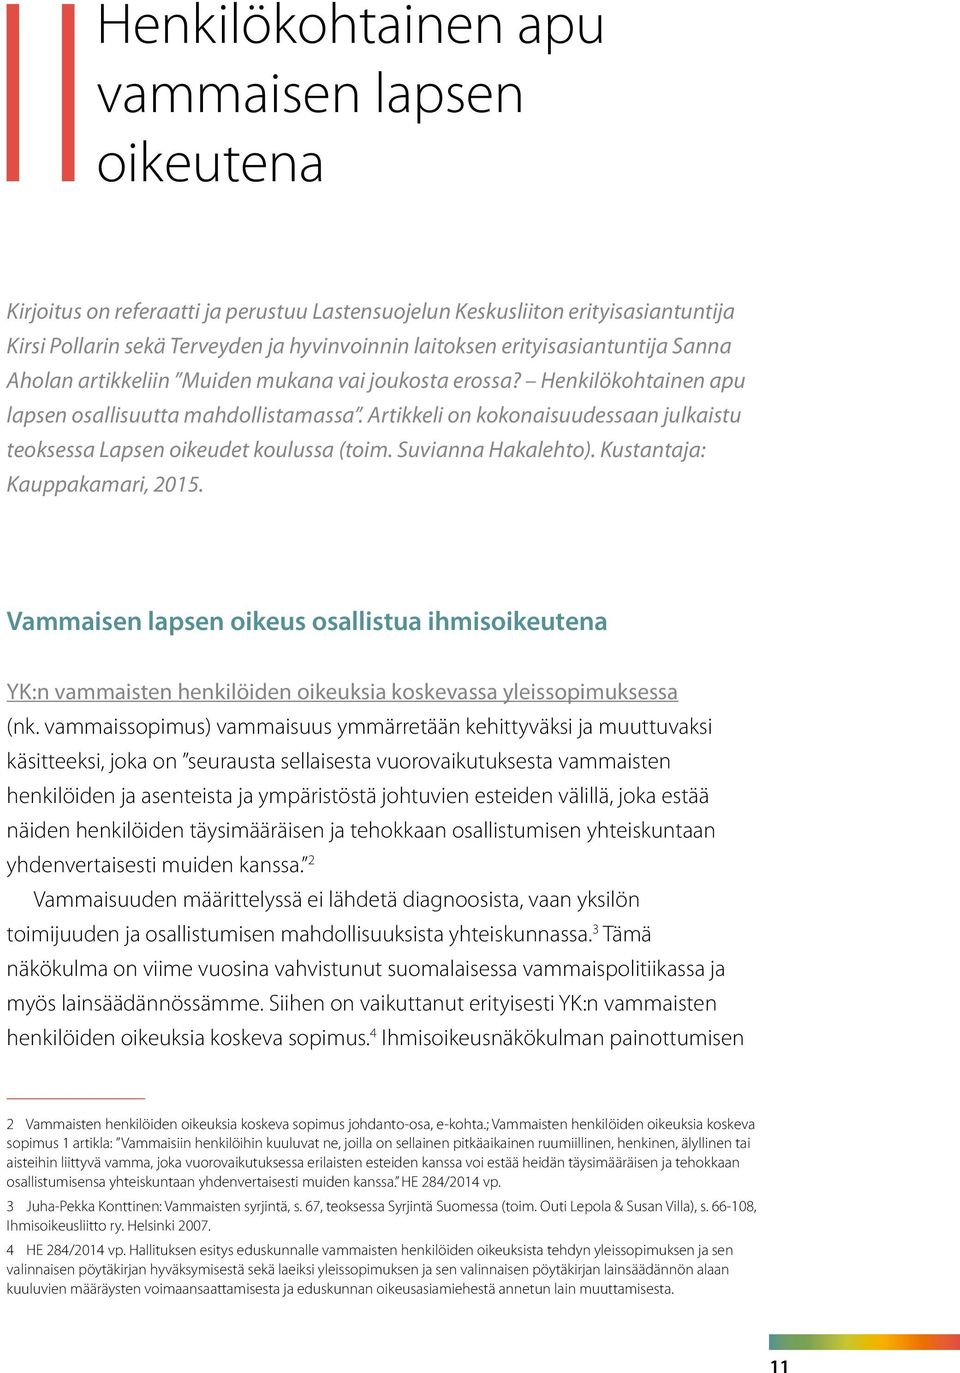 Artikkeli on kokonaisuudessaan julkaistu teoksessa Lapsen oikeudet koulussa (toim. Suvianna Hakalehto). Kustantaja: Kauppakamari, 2015.